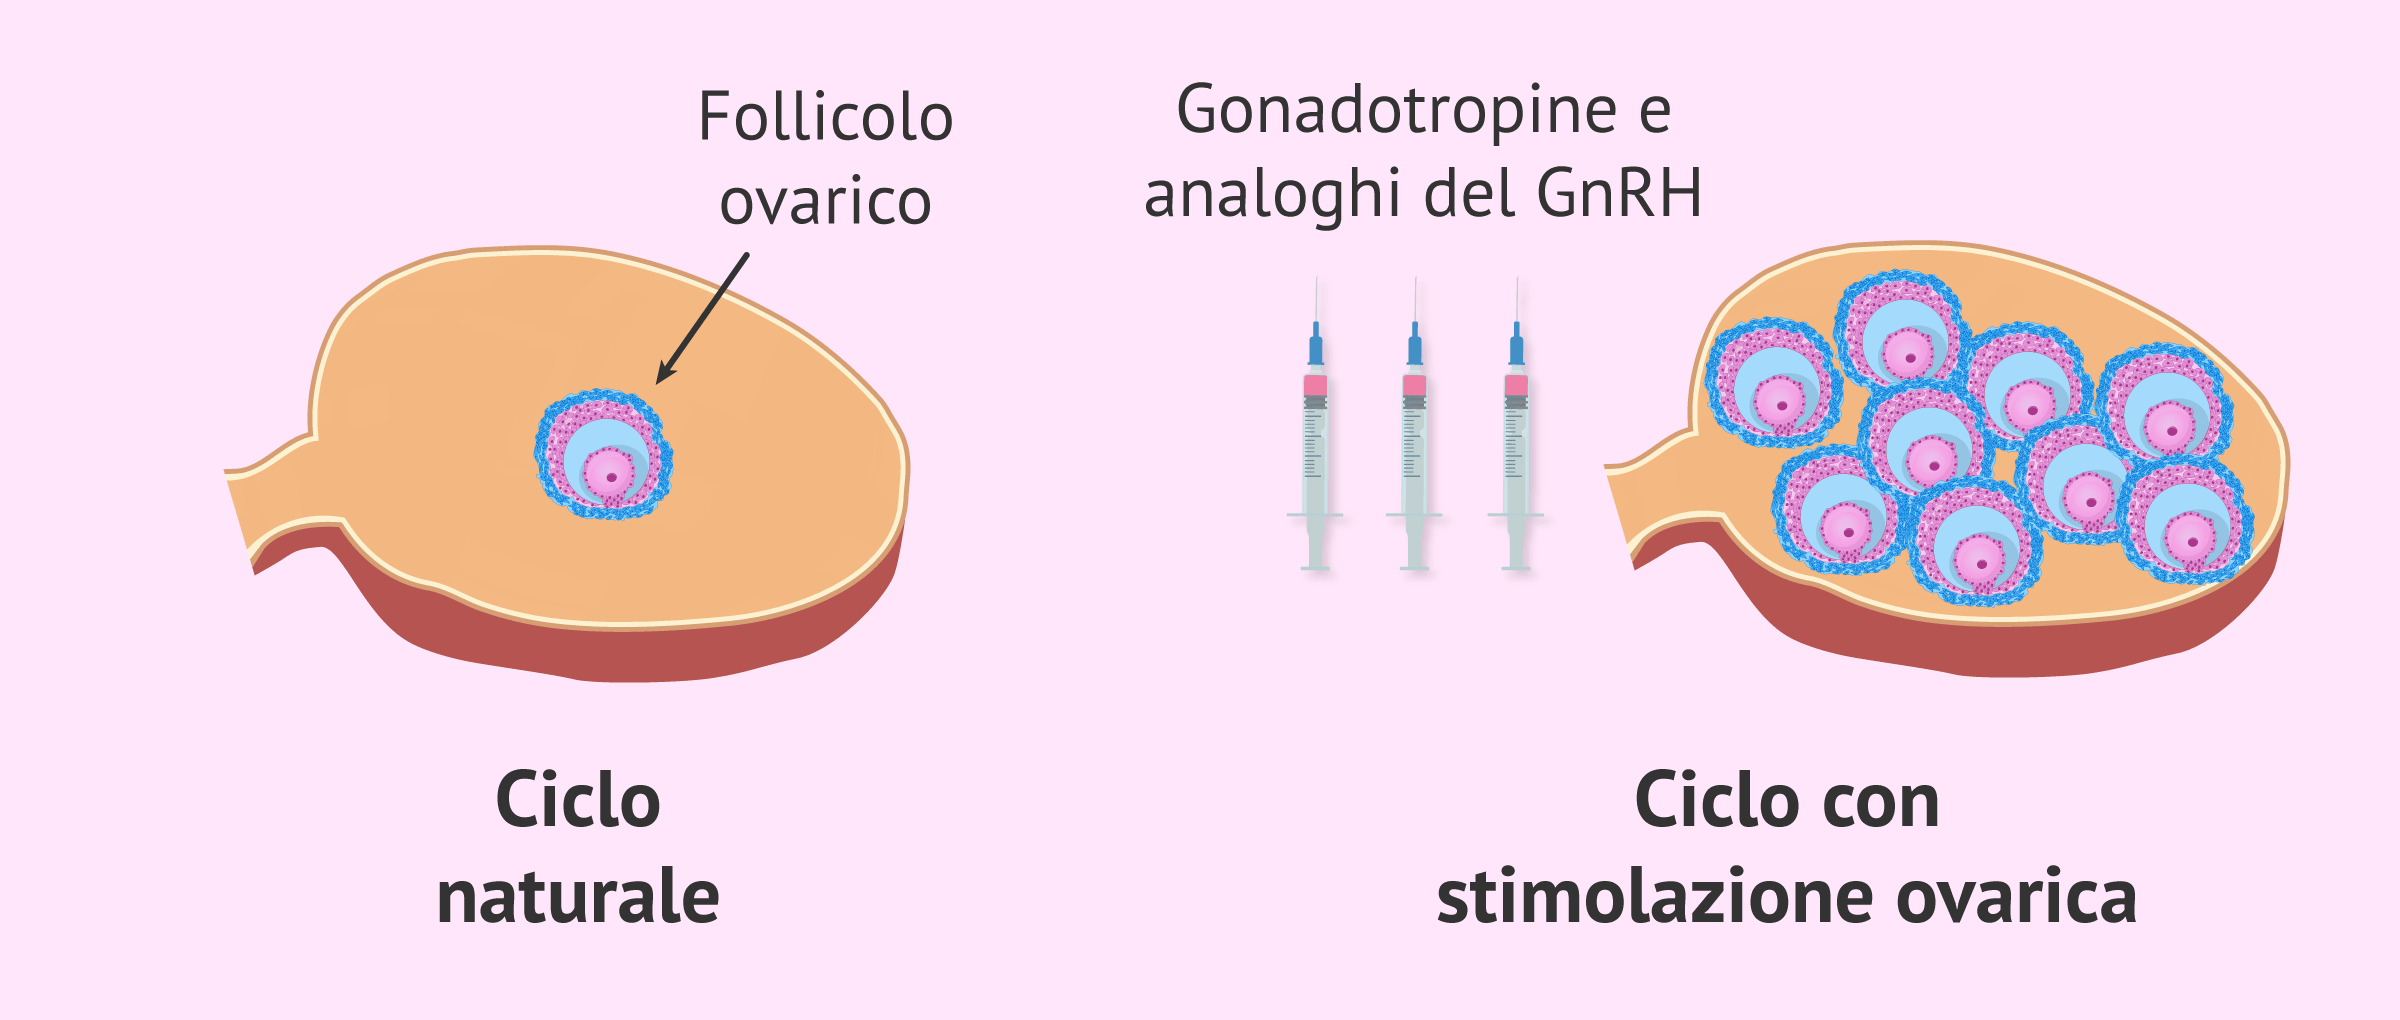 Ciclo naturale e ciclo con stimolazione ovarica controllata